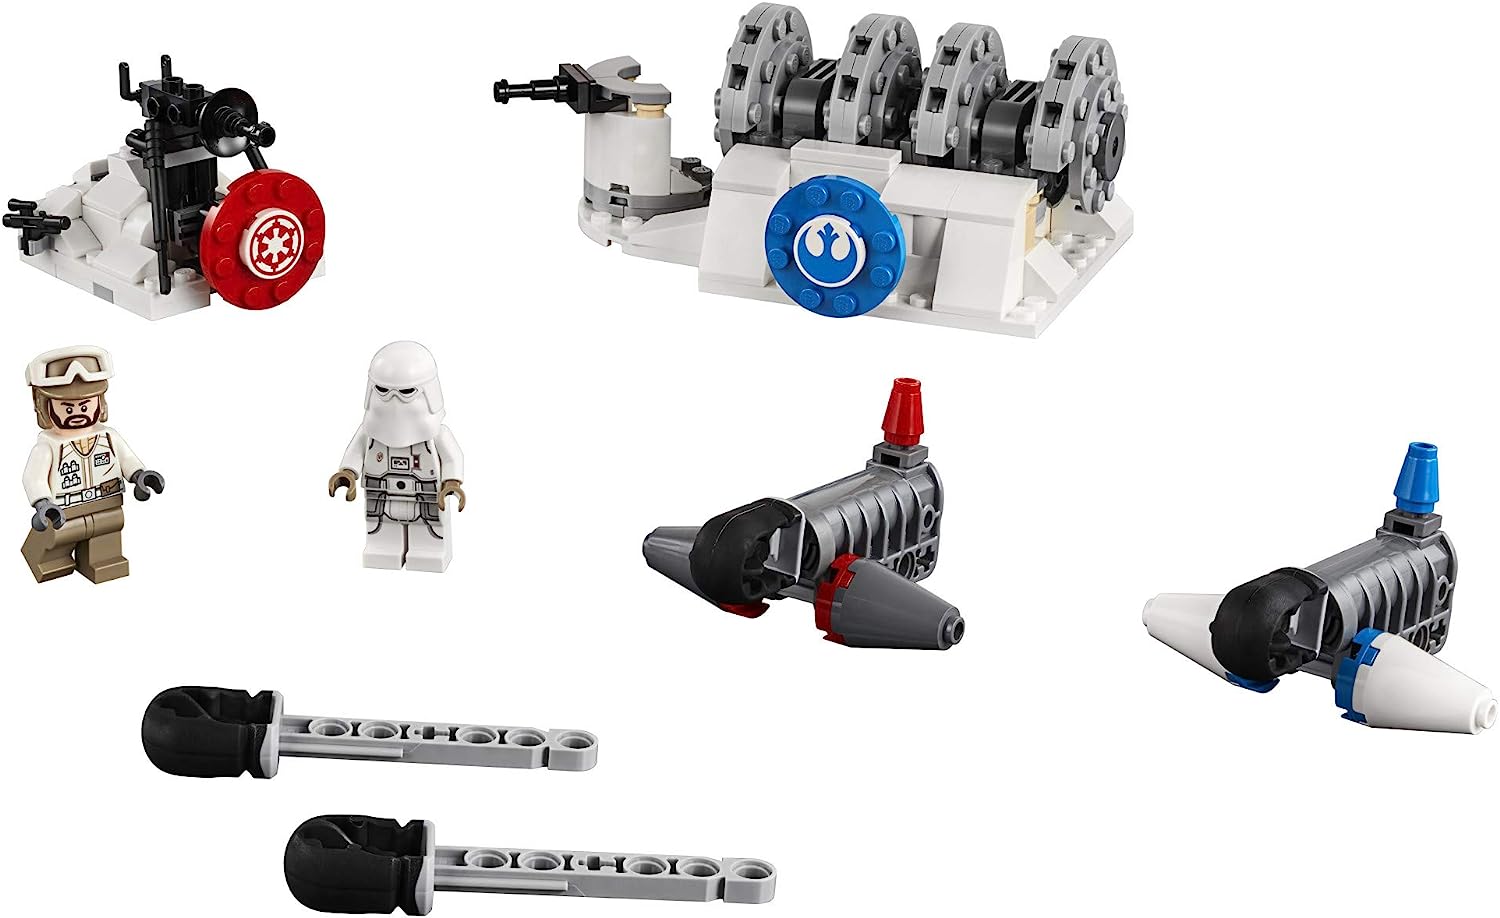 レゴ スターウォーズ LEGO Star Wars: The Empire Strikes Back Action Battle Hoth Generator Attack 75239 Building Kit (235 Pieces)レゴ スターウォーズ